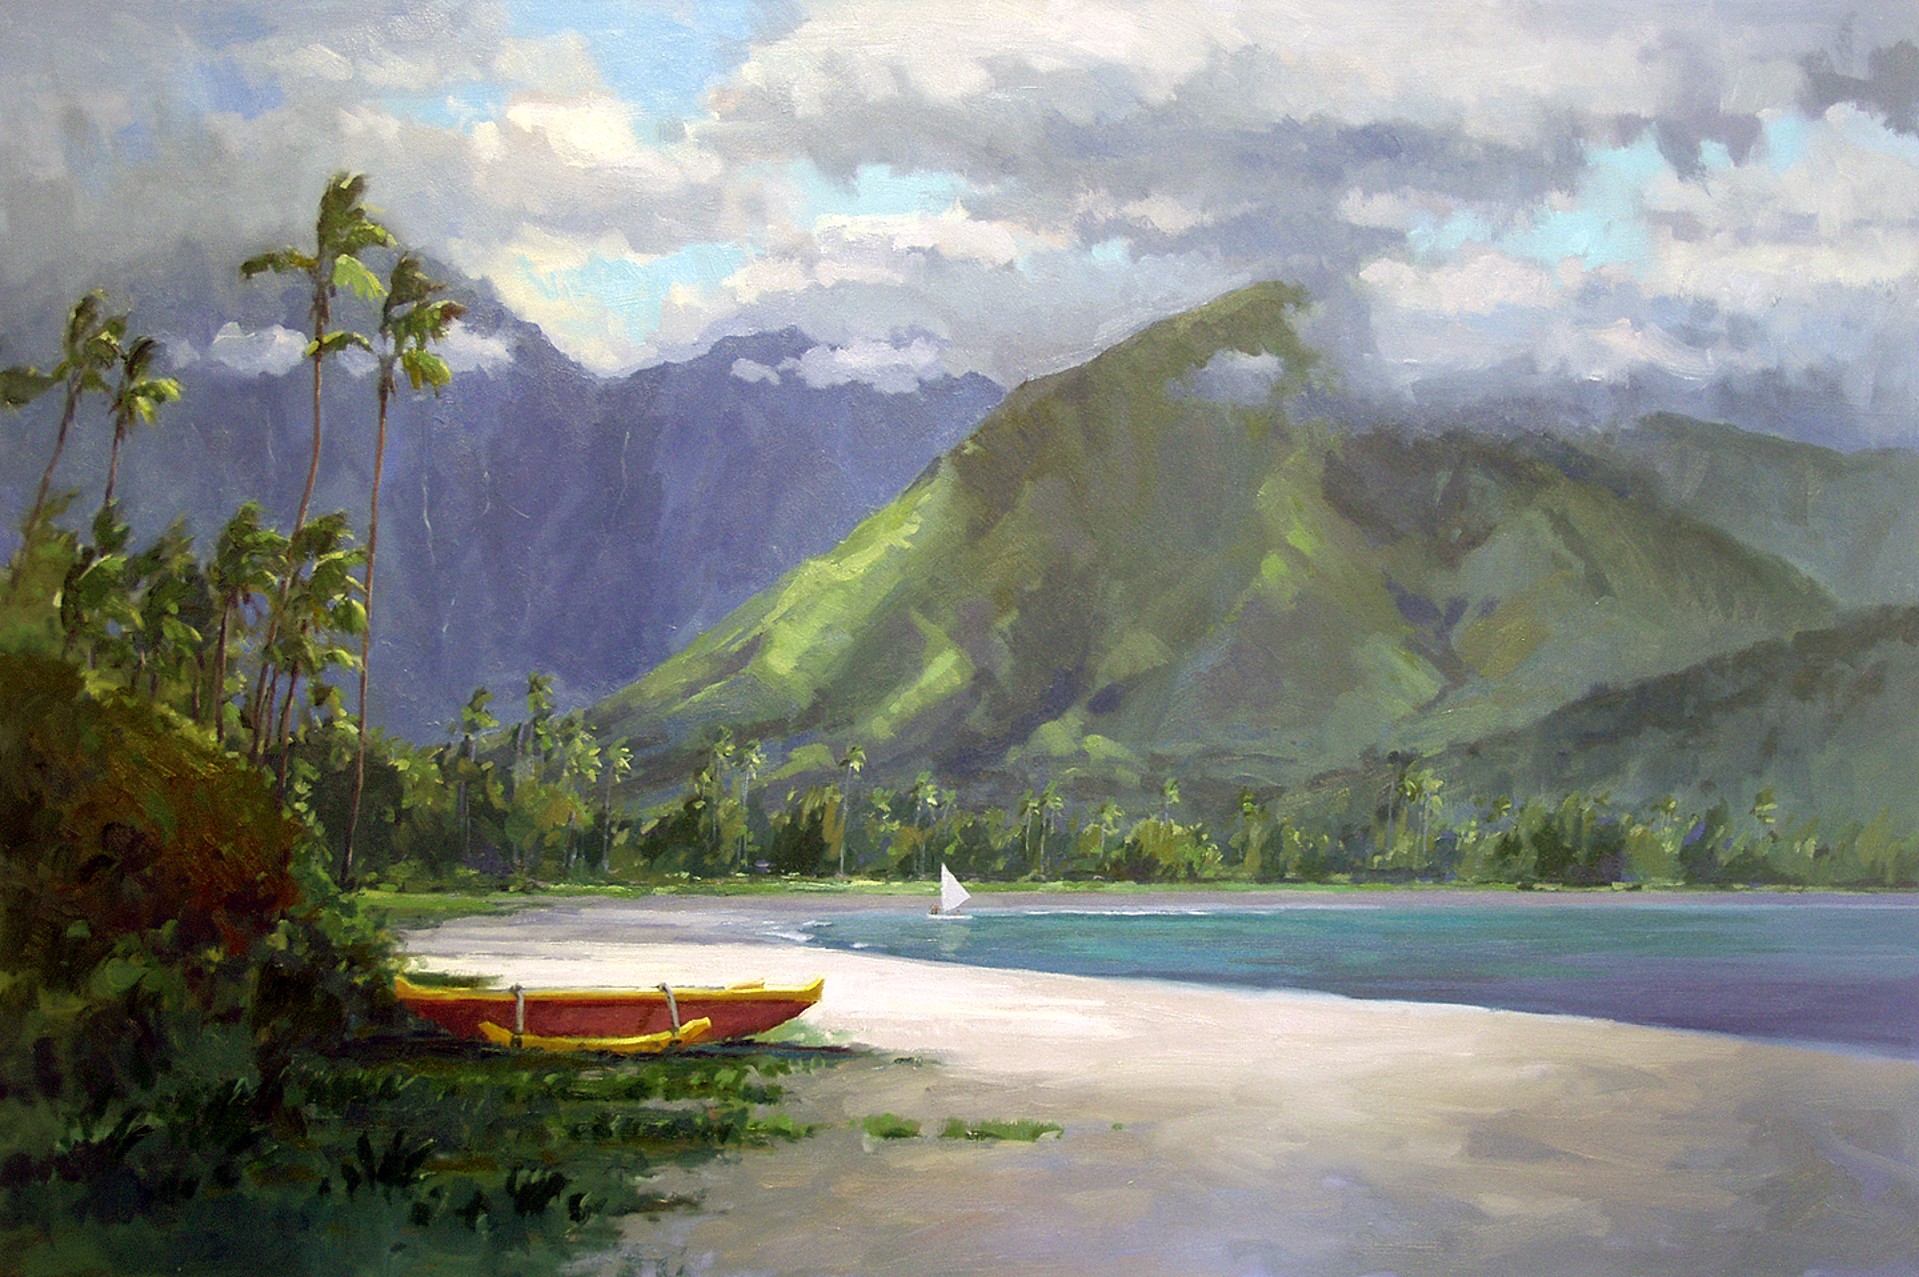 Timeless Beauty - Kauai by Ronaldo Macedo